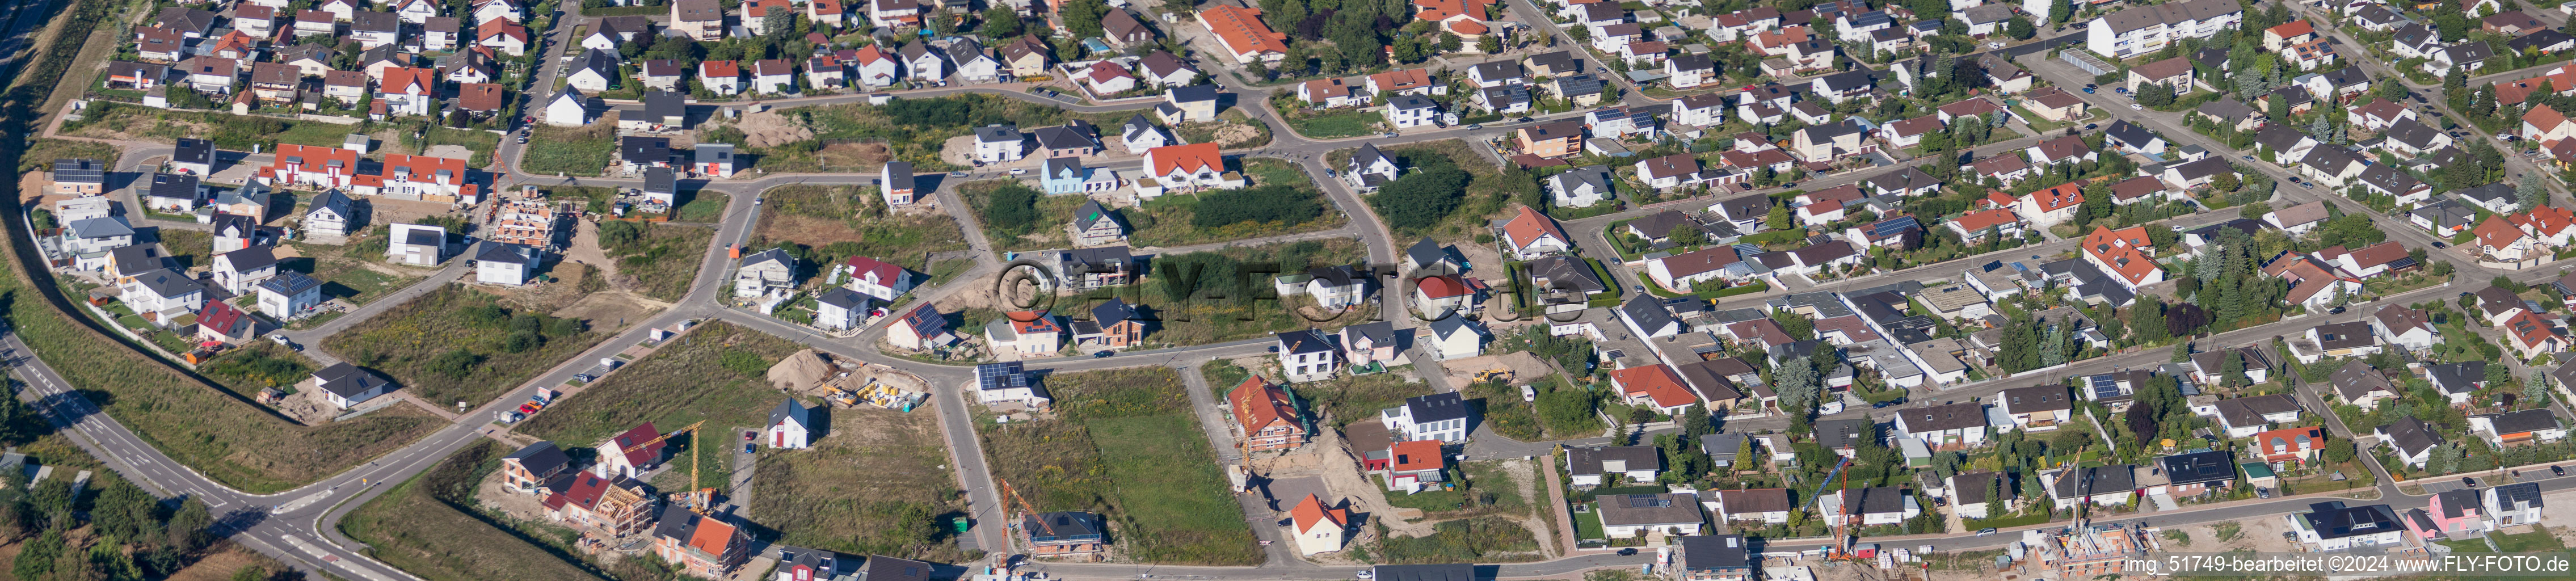 Vue aérienne de Chantiers en perspective panoramique pour le nouveau quartier résidentiel d'un lotissement de maisons unifamiliales à l'ouest à Jockgrim dans le département Rhénanie-Palatinat, Allemagne